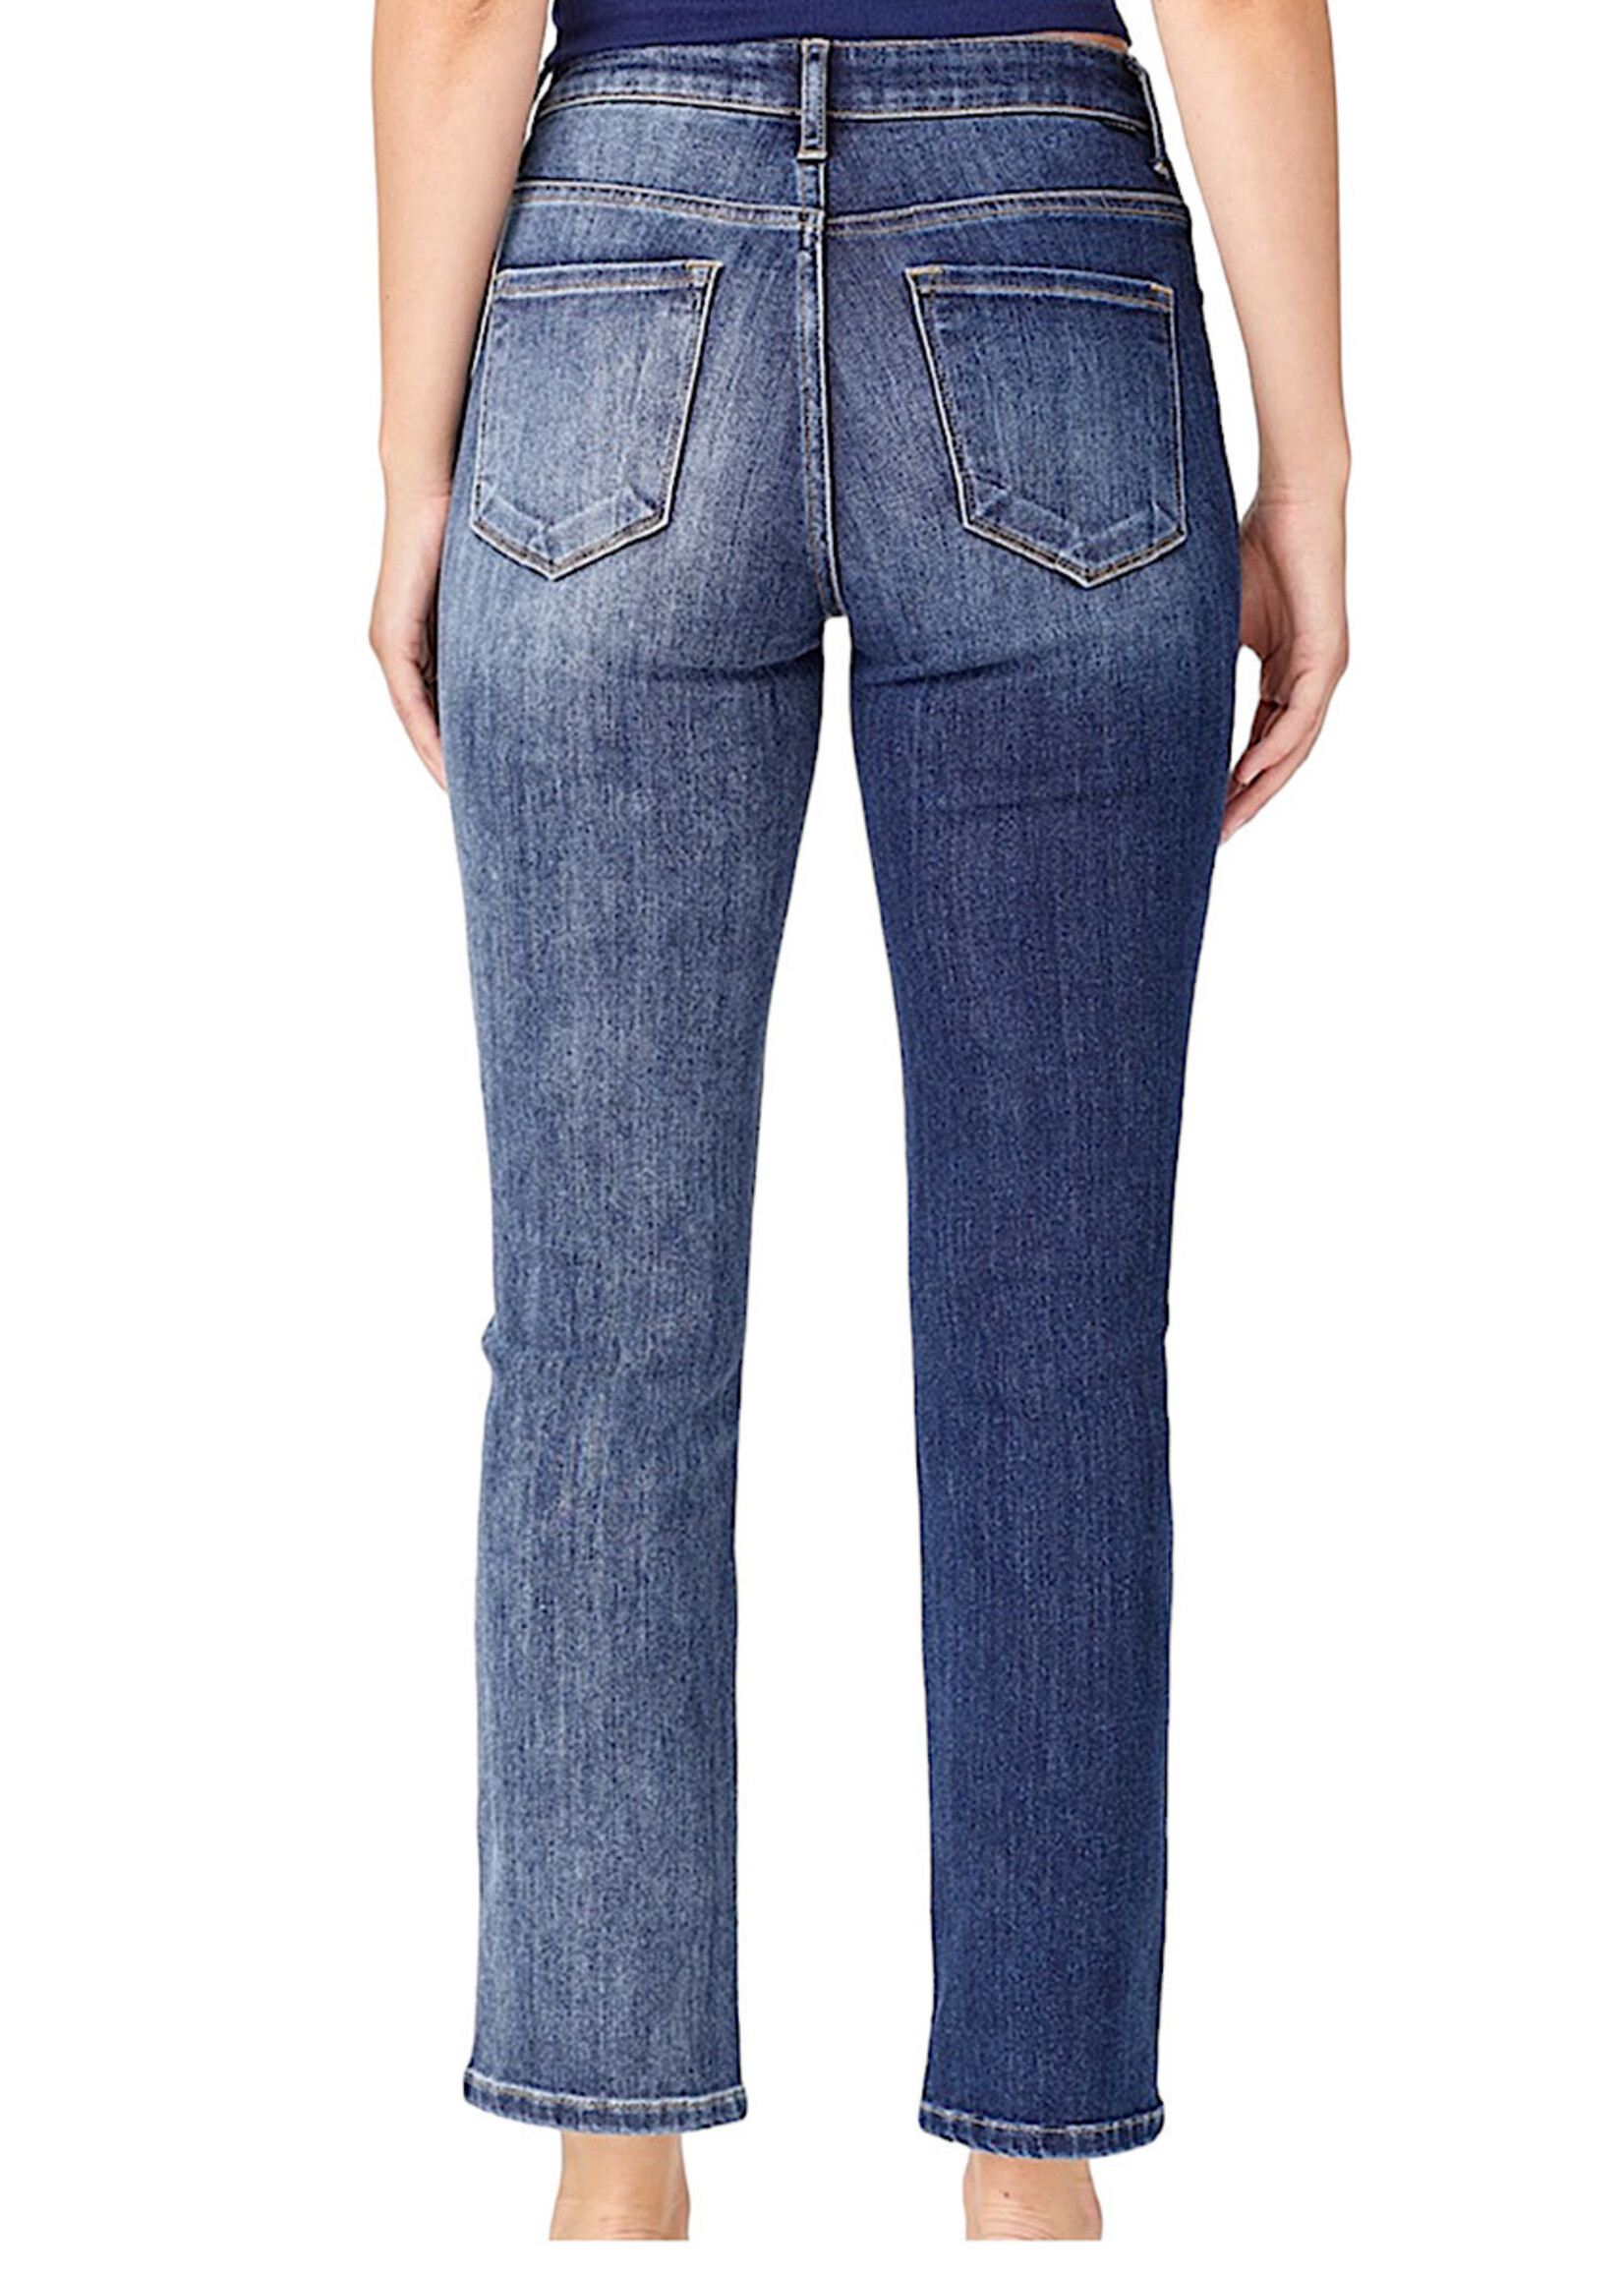 RISEN RDP5261 High Rise Slender Straight Jeans